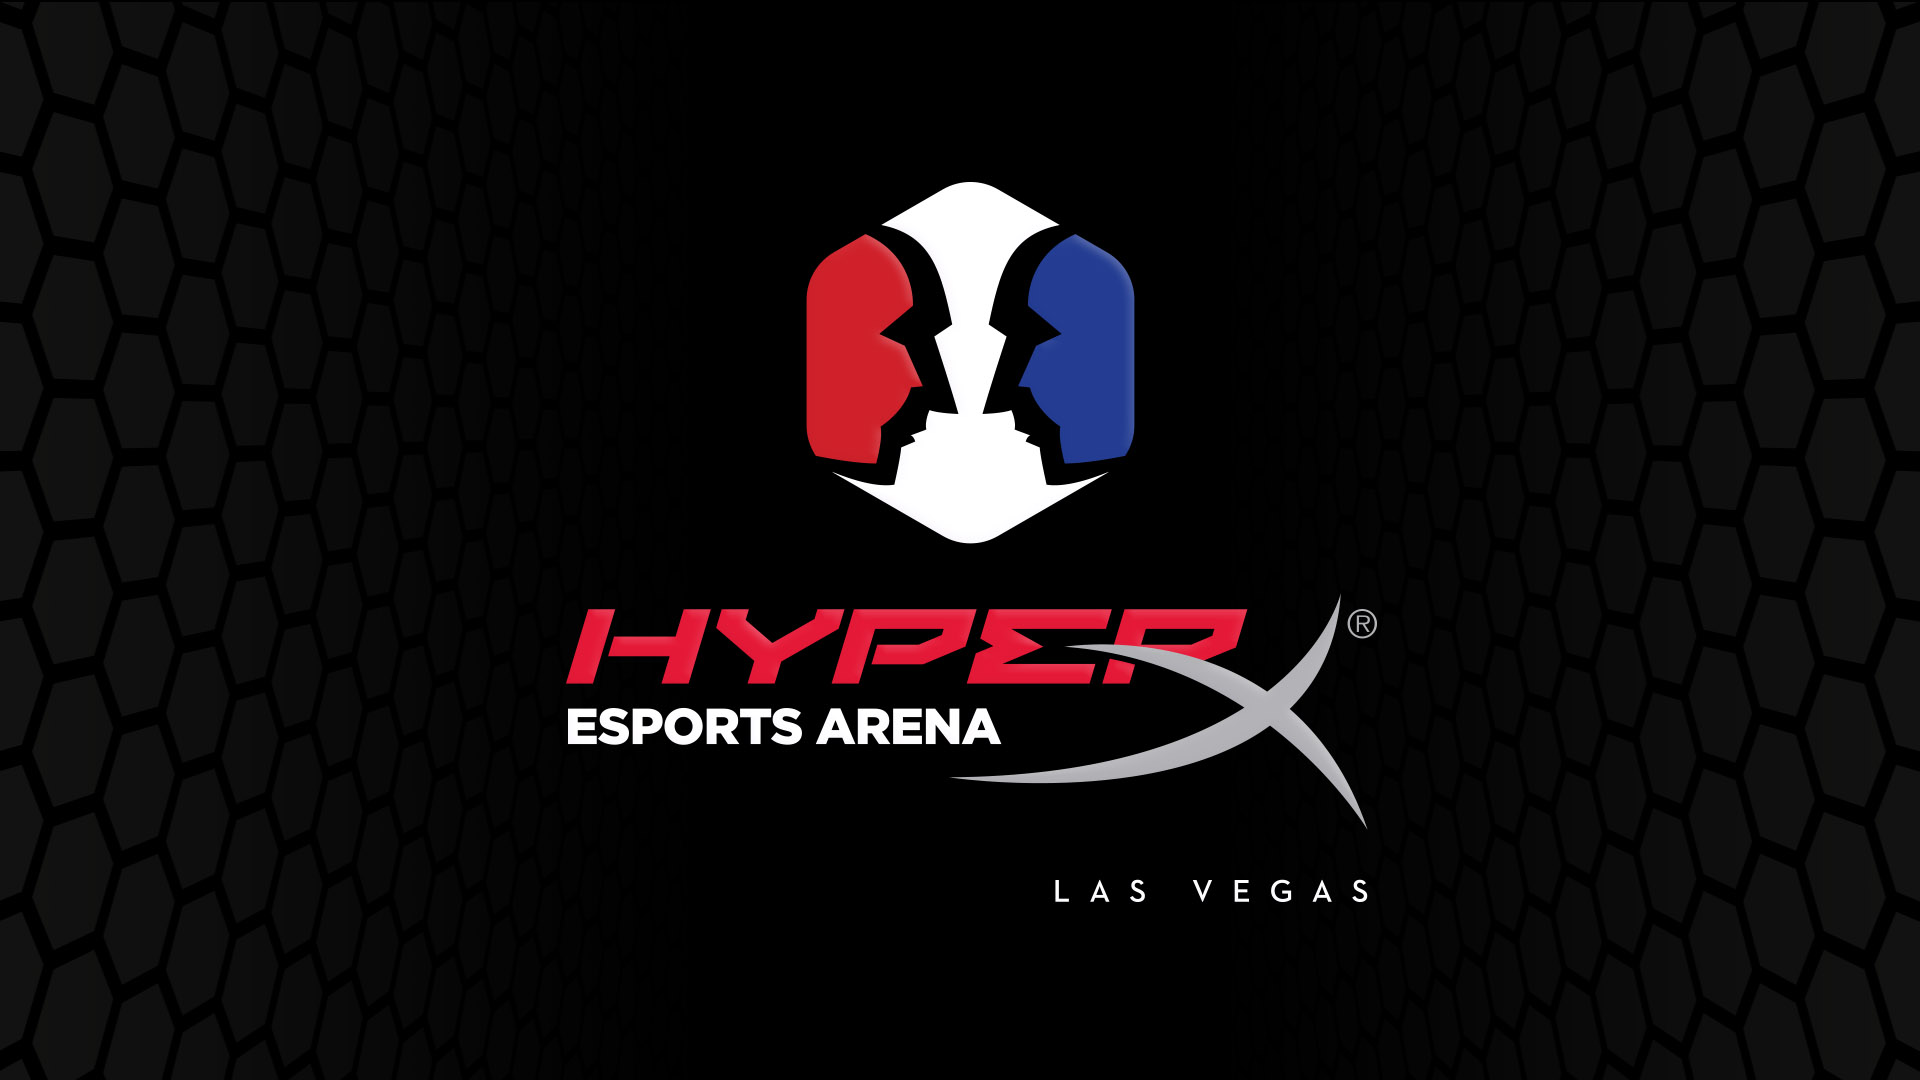 hyperxesalv wallpaper HyperX และ Allied Esports ประกาศความร่วมมือใน HyperX Esports Arena Las Vegas สิทธิ์ในชื่อและการเป็นหุ้นส่วนสำหรับสิ่งต่างๆ ที่ทำให้กับ Esports Arena ในอเมริกาเหนือเป็นครั้งแรก